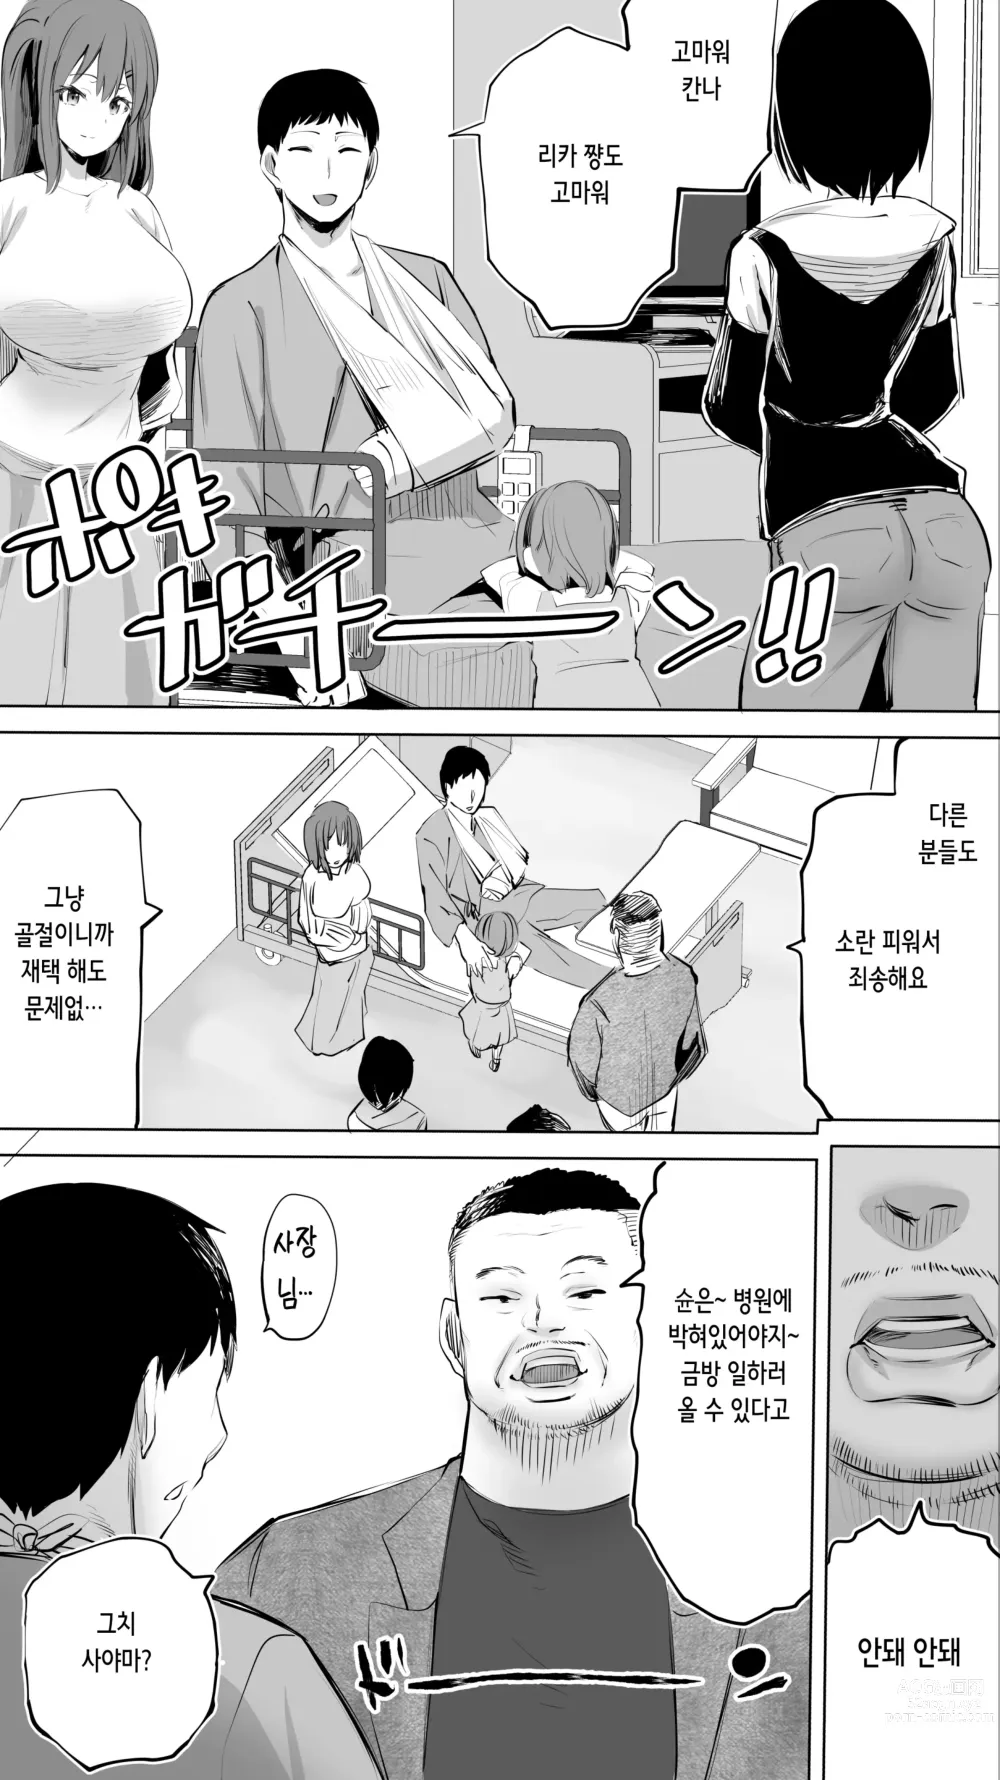 Page 3 of doujinshi 터전의 섹프 「동급생 간호사 K」